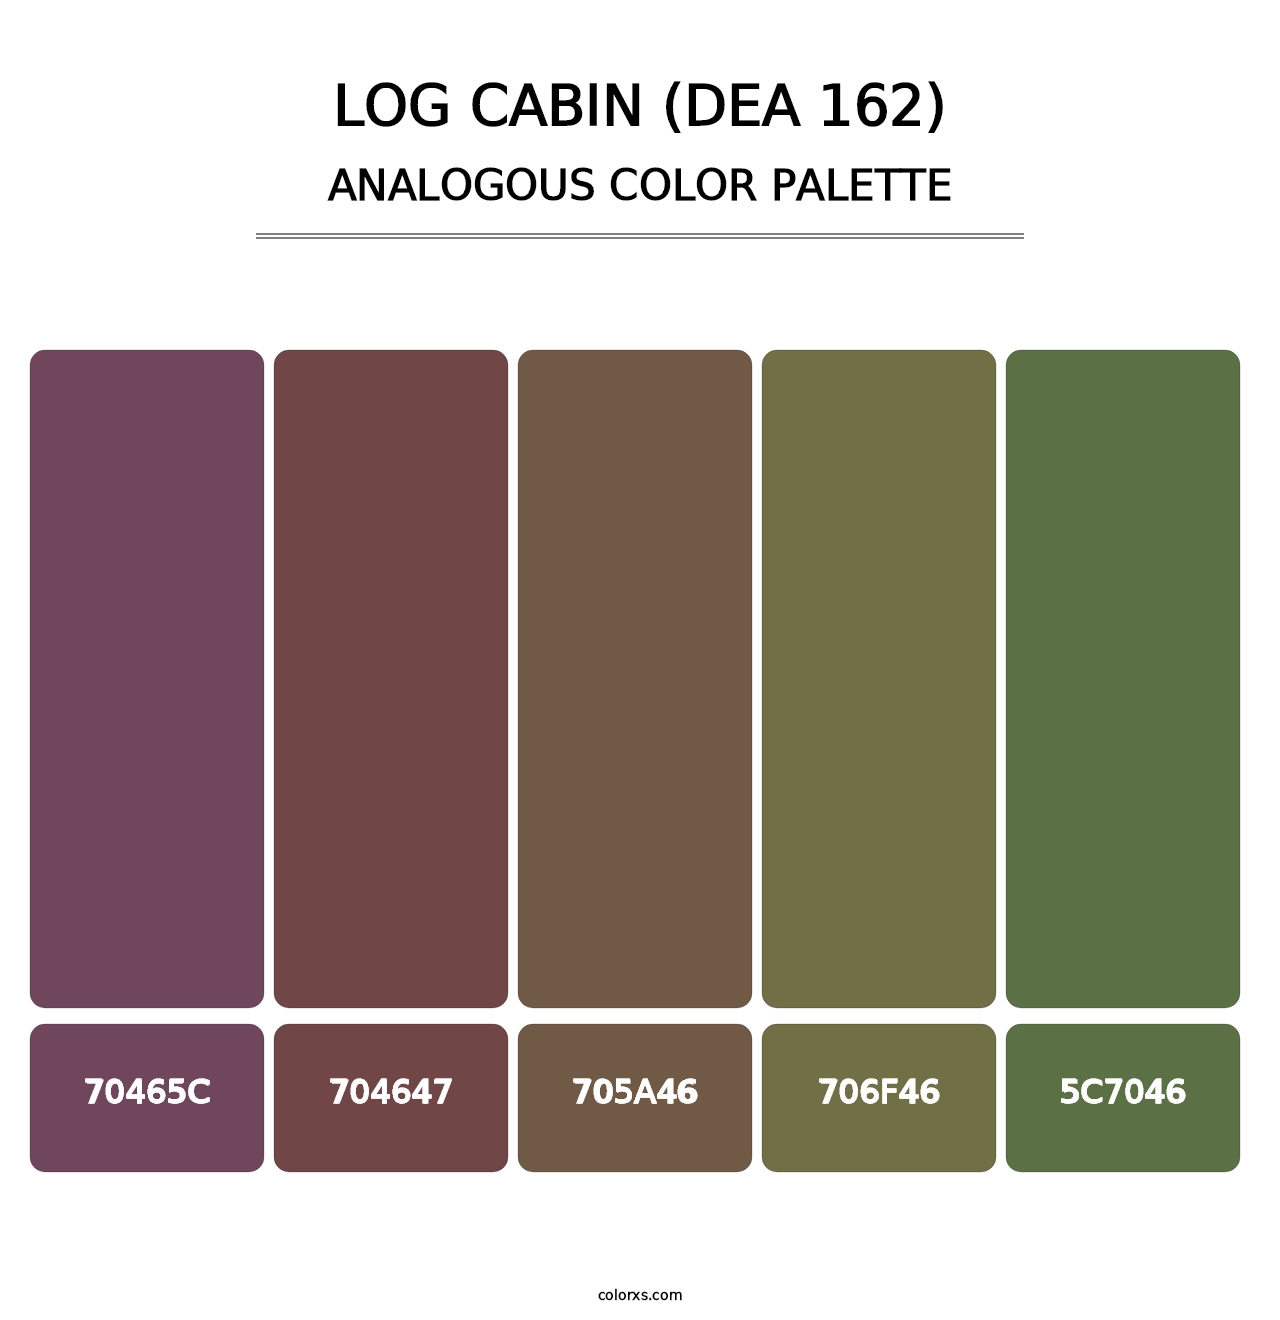 Log Cabin (DEA 162) - Analogous Color Palette